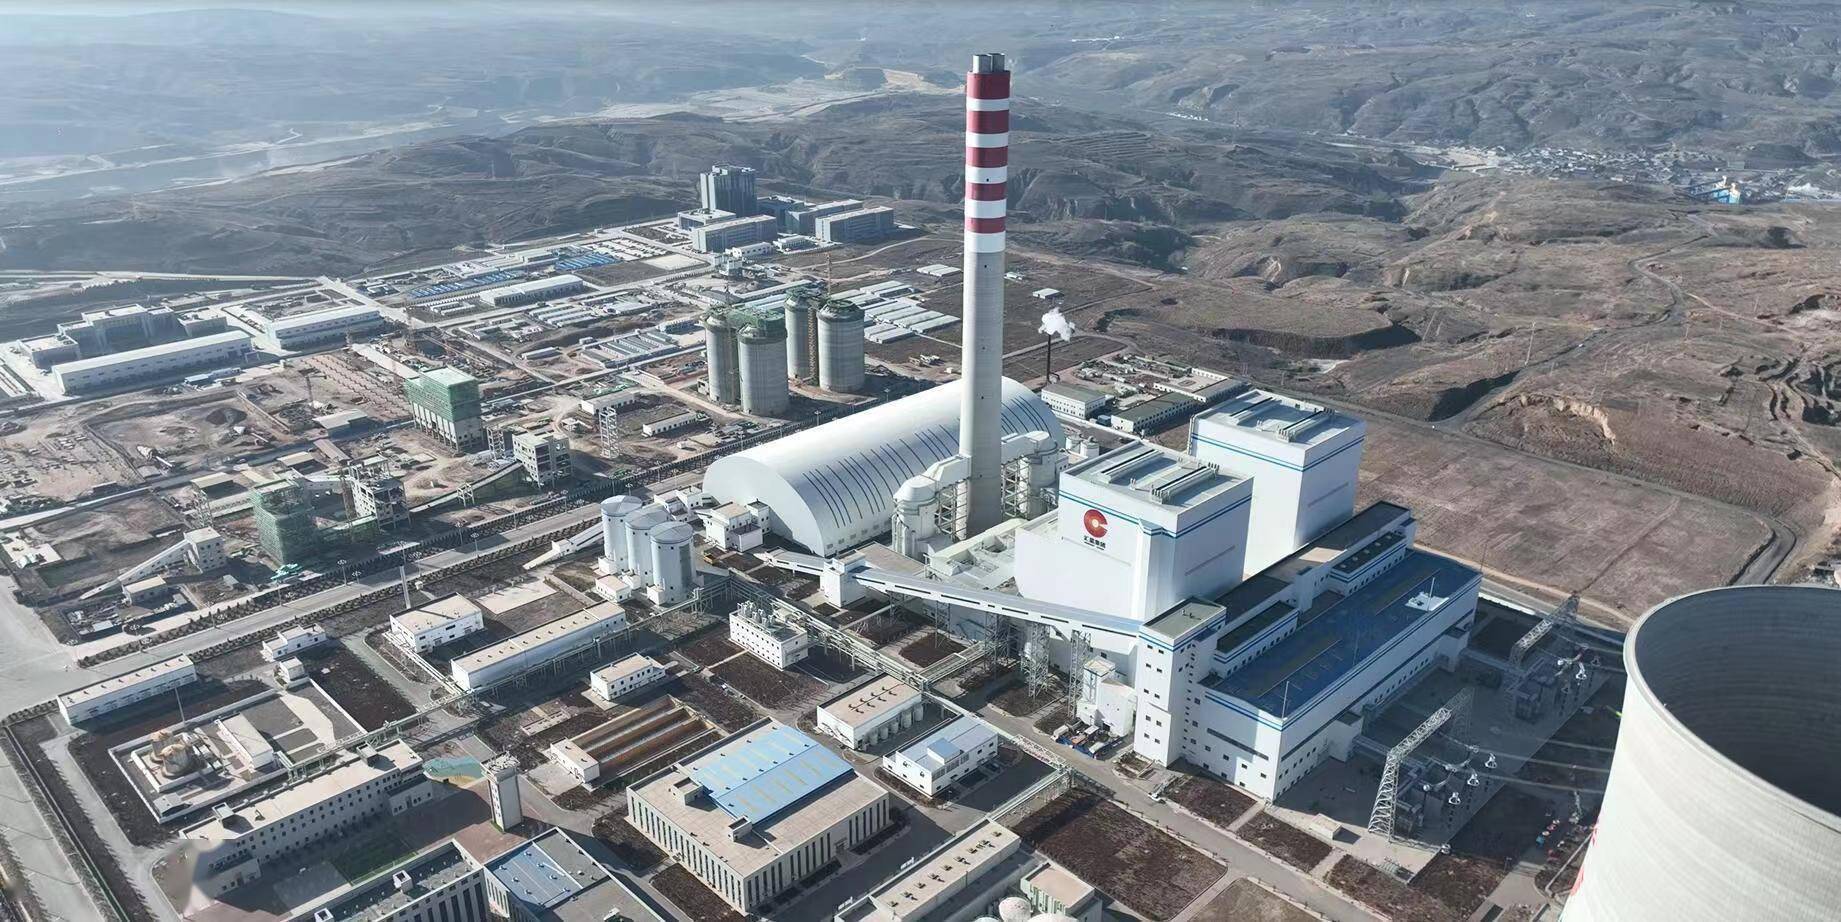 内蒙古汇能集团长滩发电有限公司总经理王小勋表示:汇能长滩电厂投运